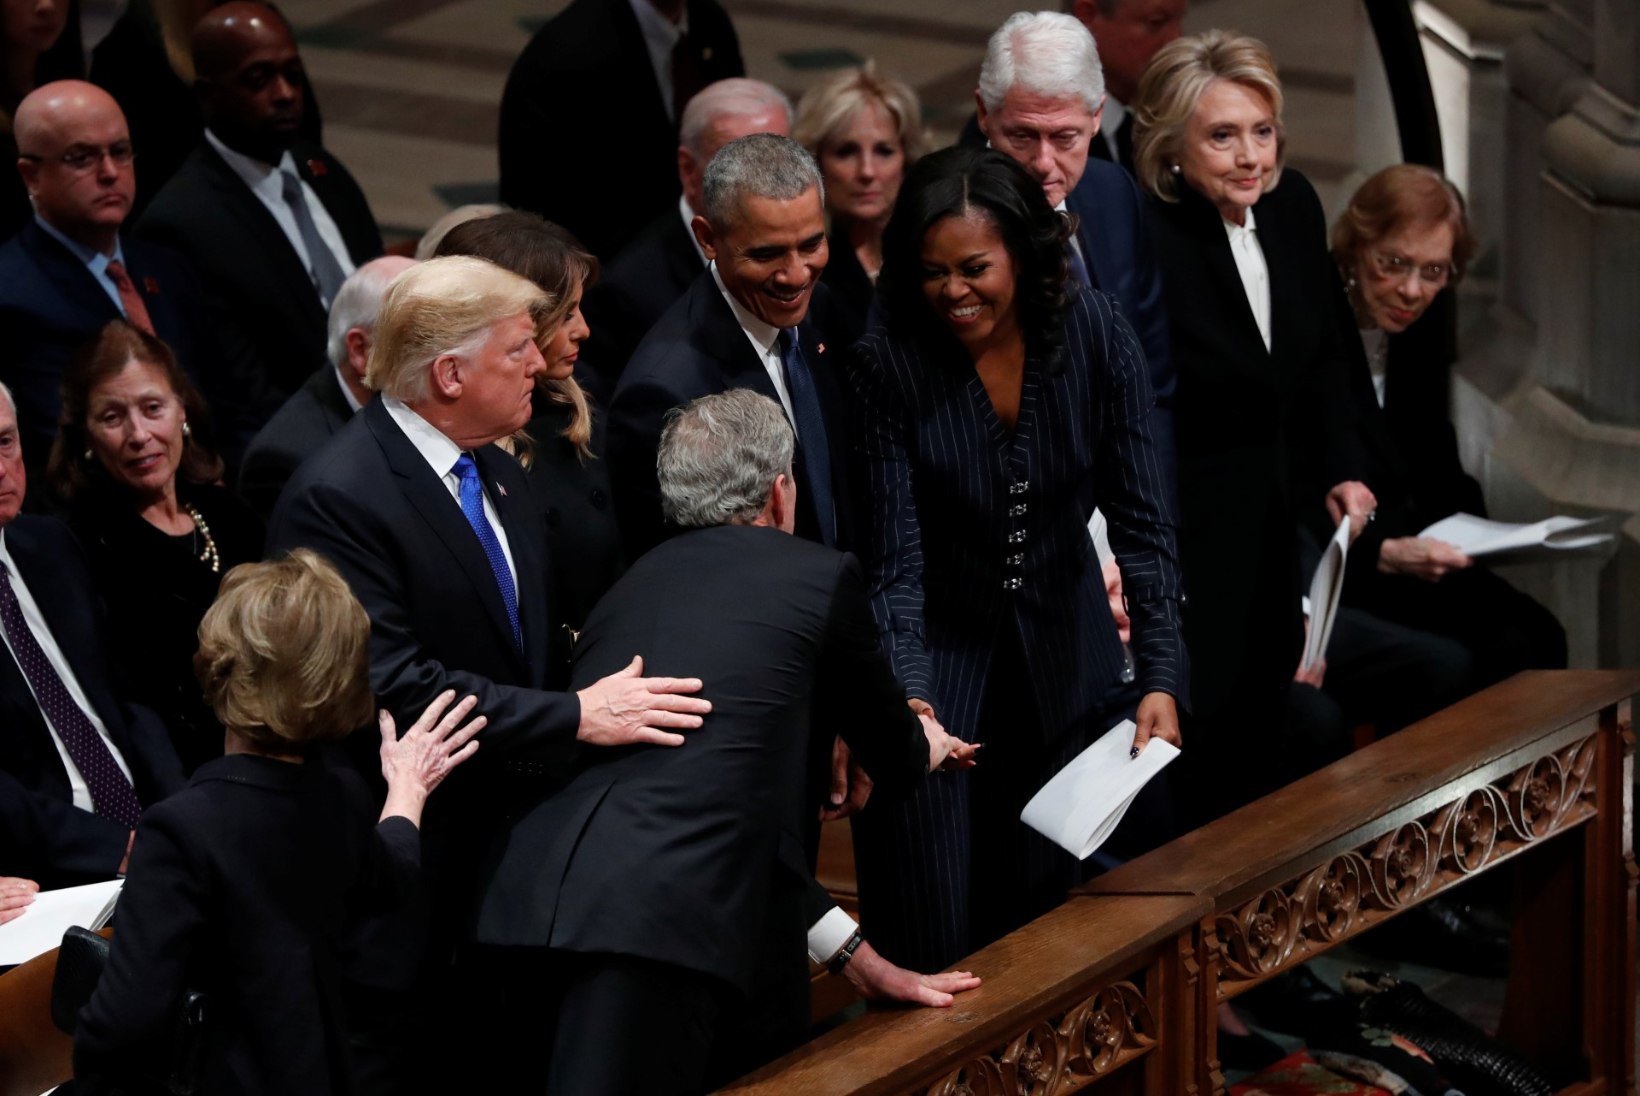 ARMAS HETK KURVAS PÄEVAS: George Bush andis isa matustel Michelle Obamale väikse üllatuse